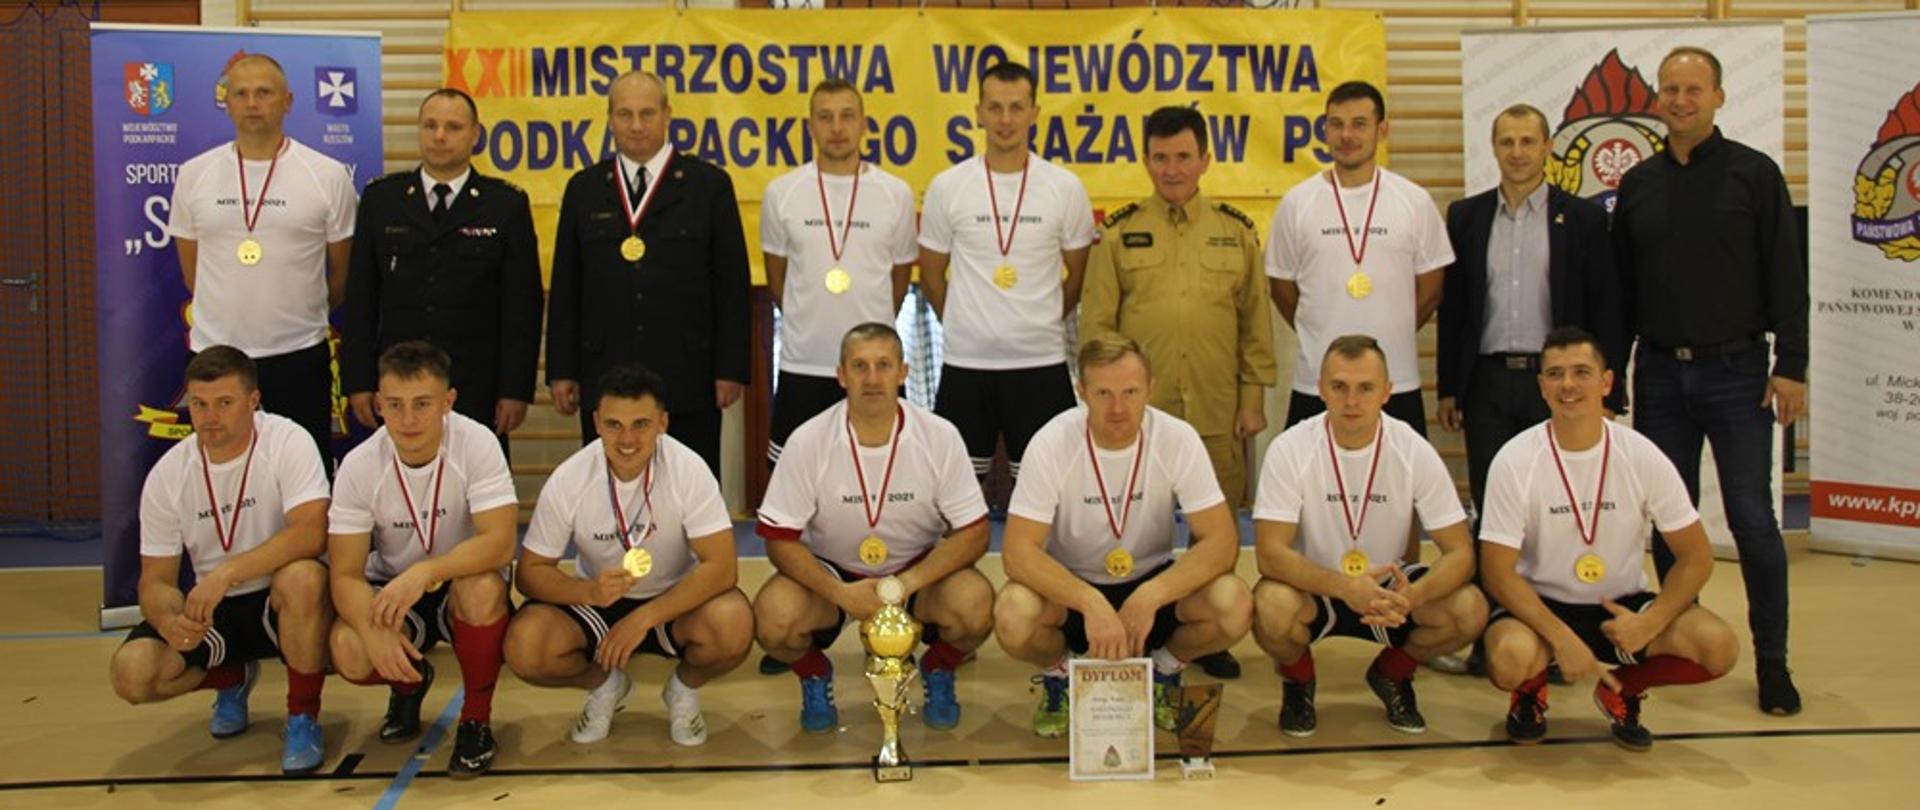 Na zdjęciu widzimy zwycięzców turnieju w piłce halowej, w raz z komendantami pozującymi z medalami i pucharem do grupowego zdjęcia na tle banneru zawodów.